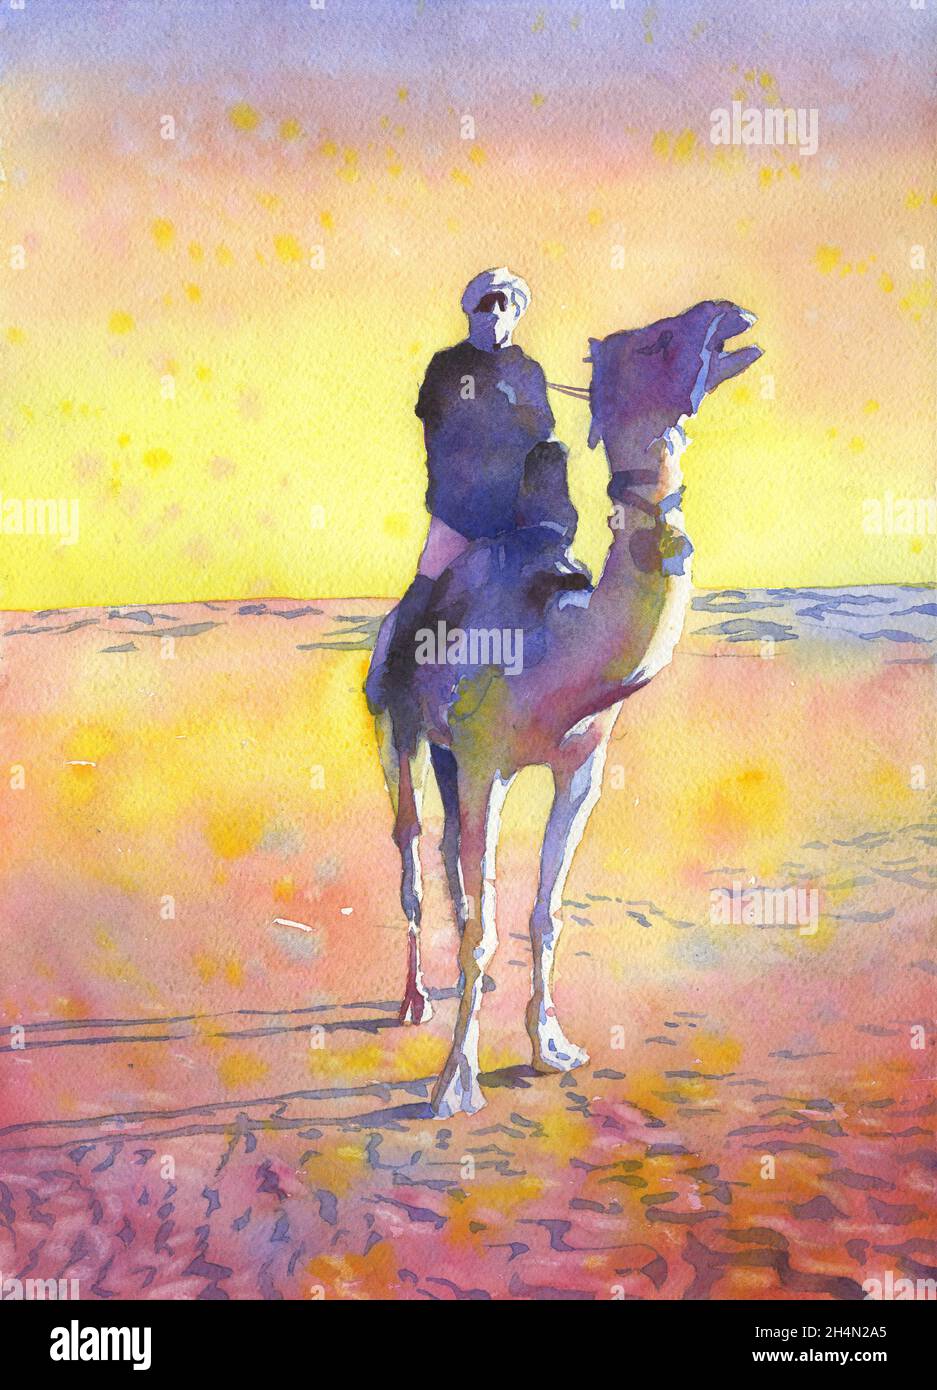 Bédouin à dos de chameau dans le désert du Sahar - Tozeur, Tunisie.Art du désert Bedouin homme peinture art coloré Banque D'Images